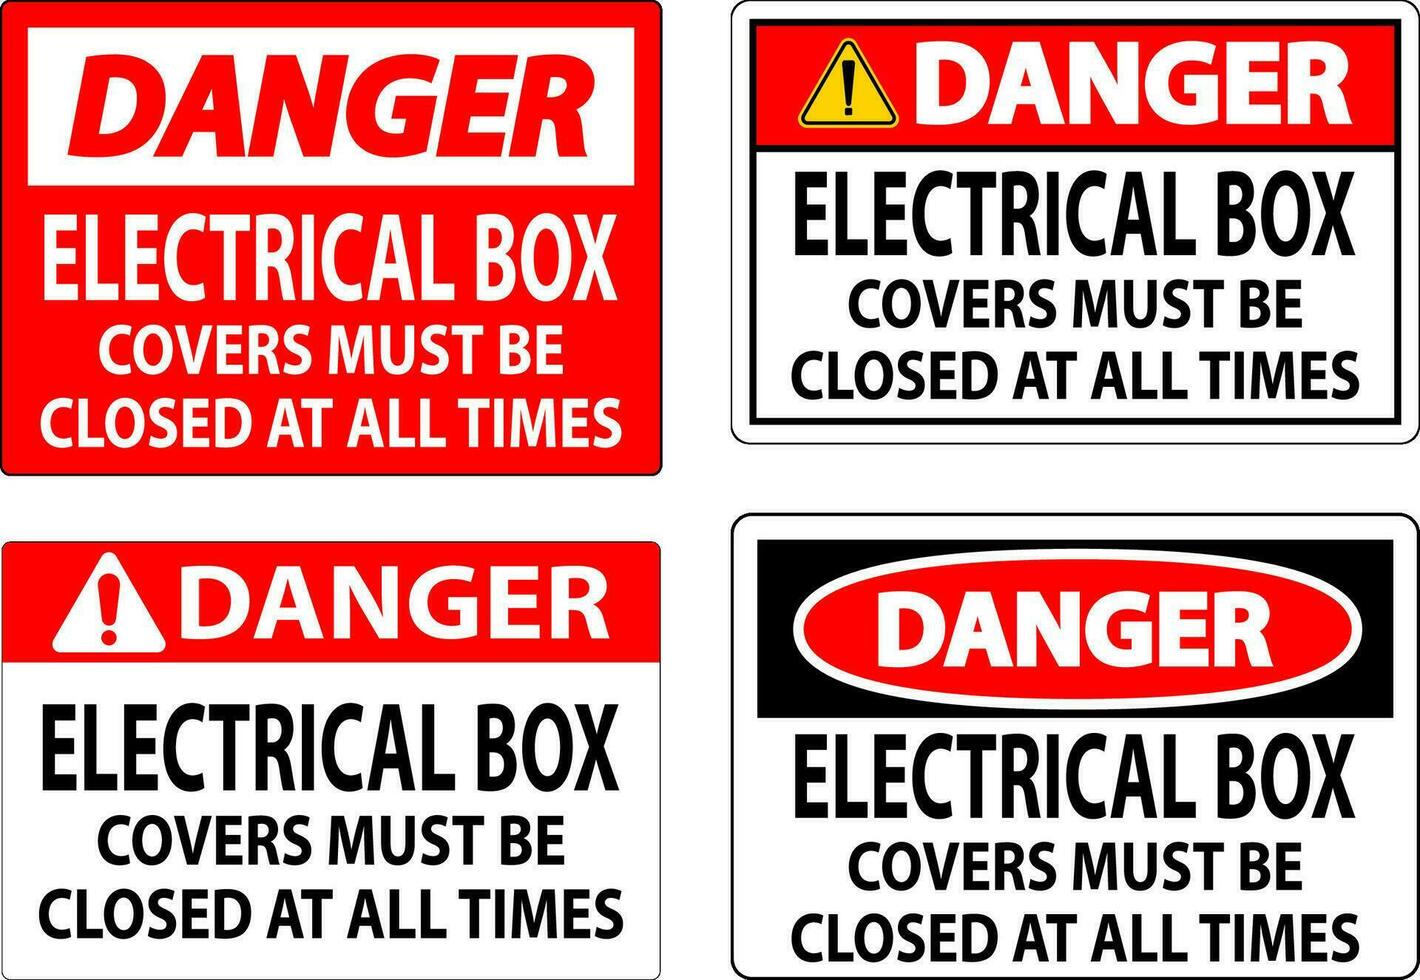 Perigo placa elétrico caixa cobre devo estar fechadas às todos vezes vetor